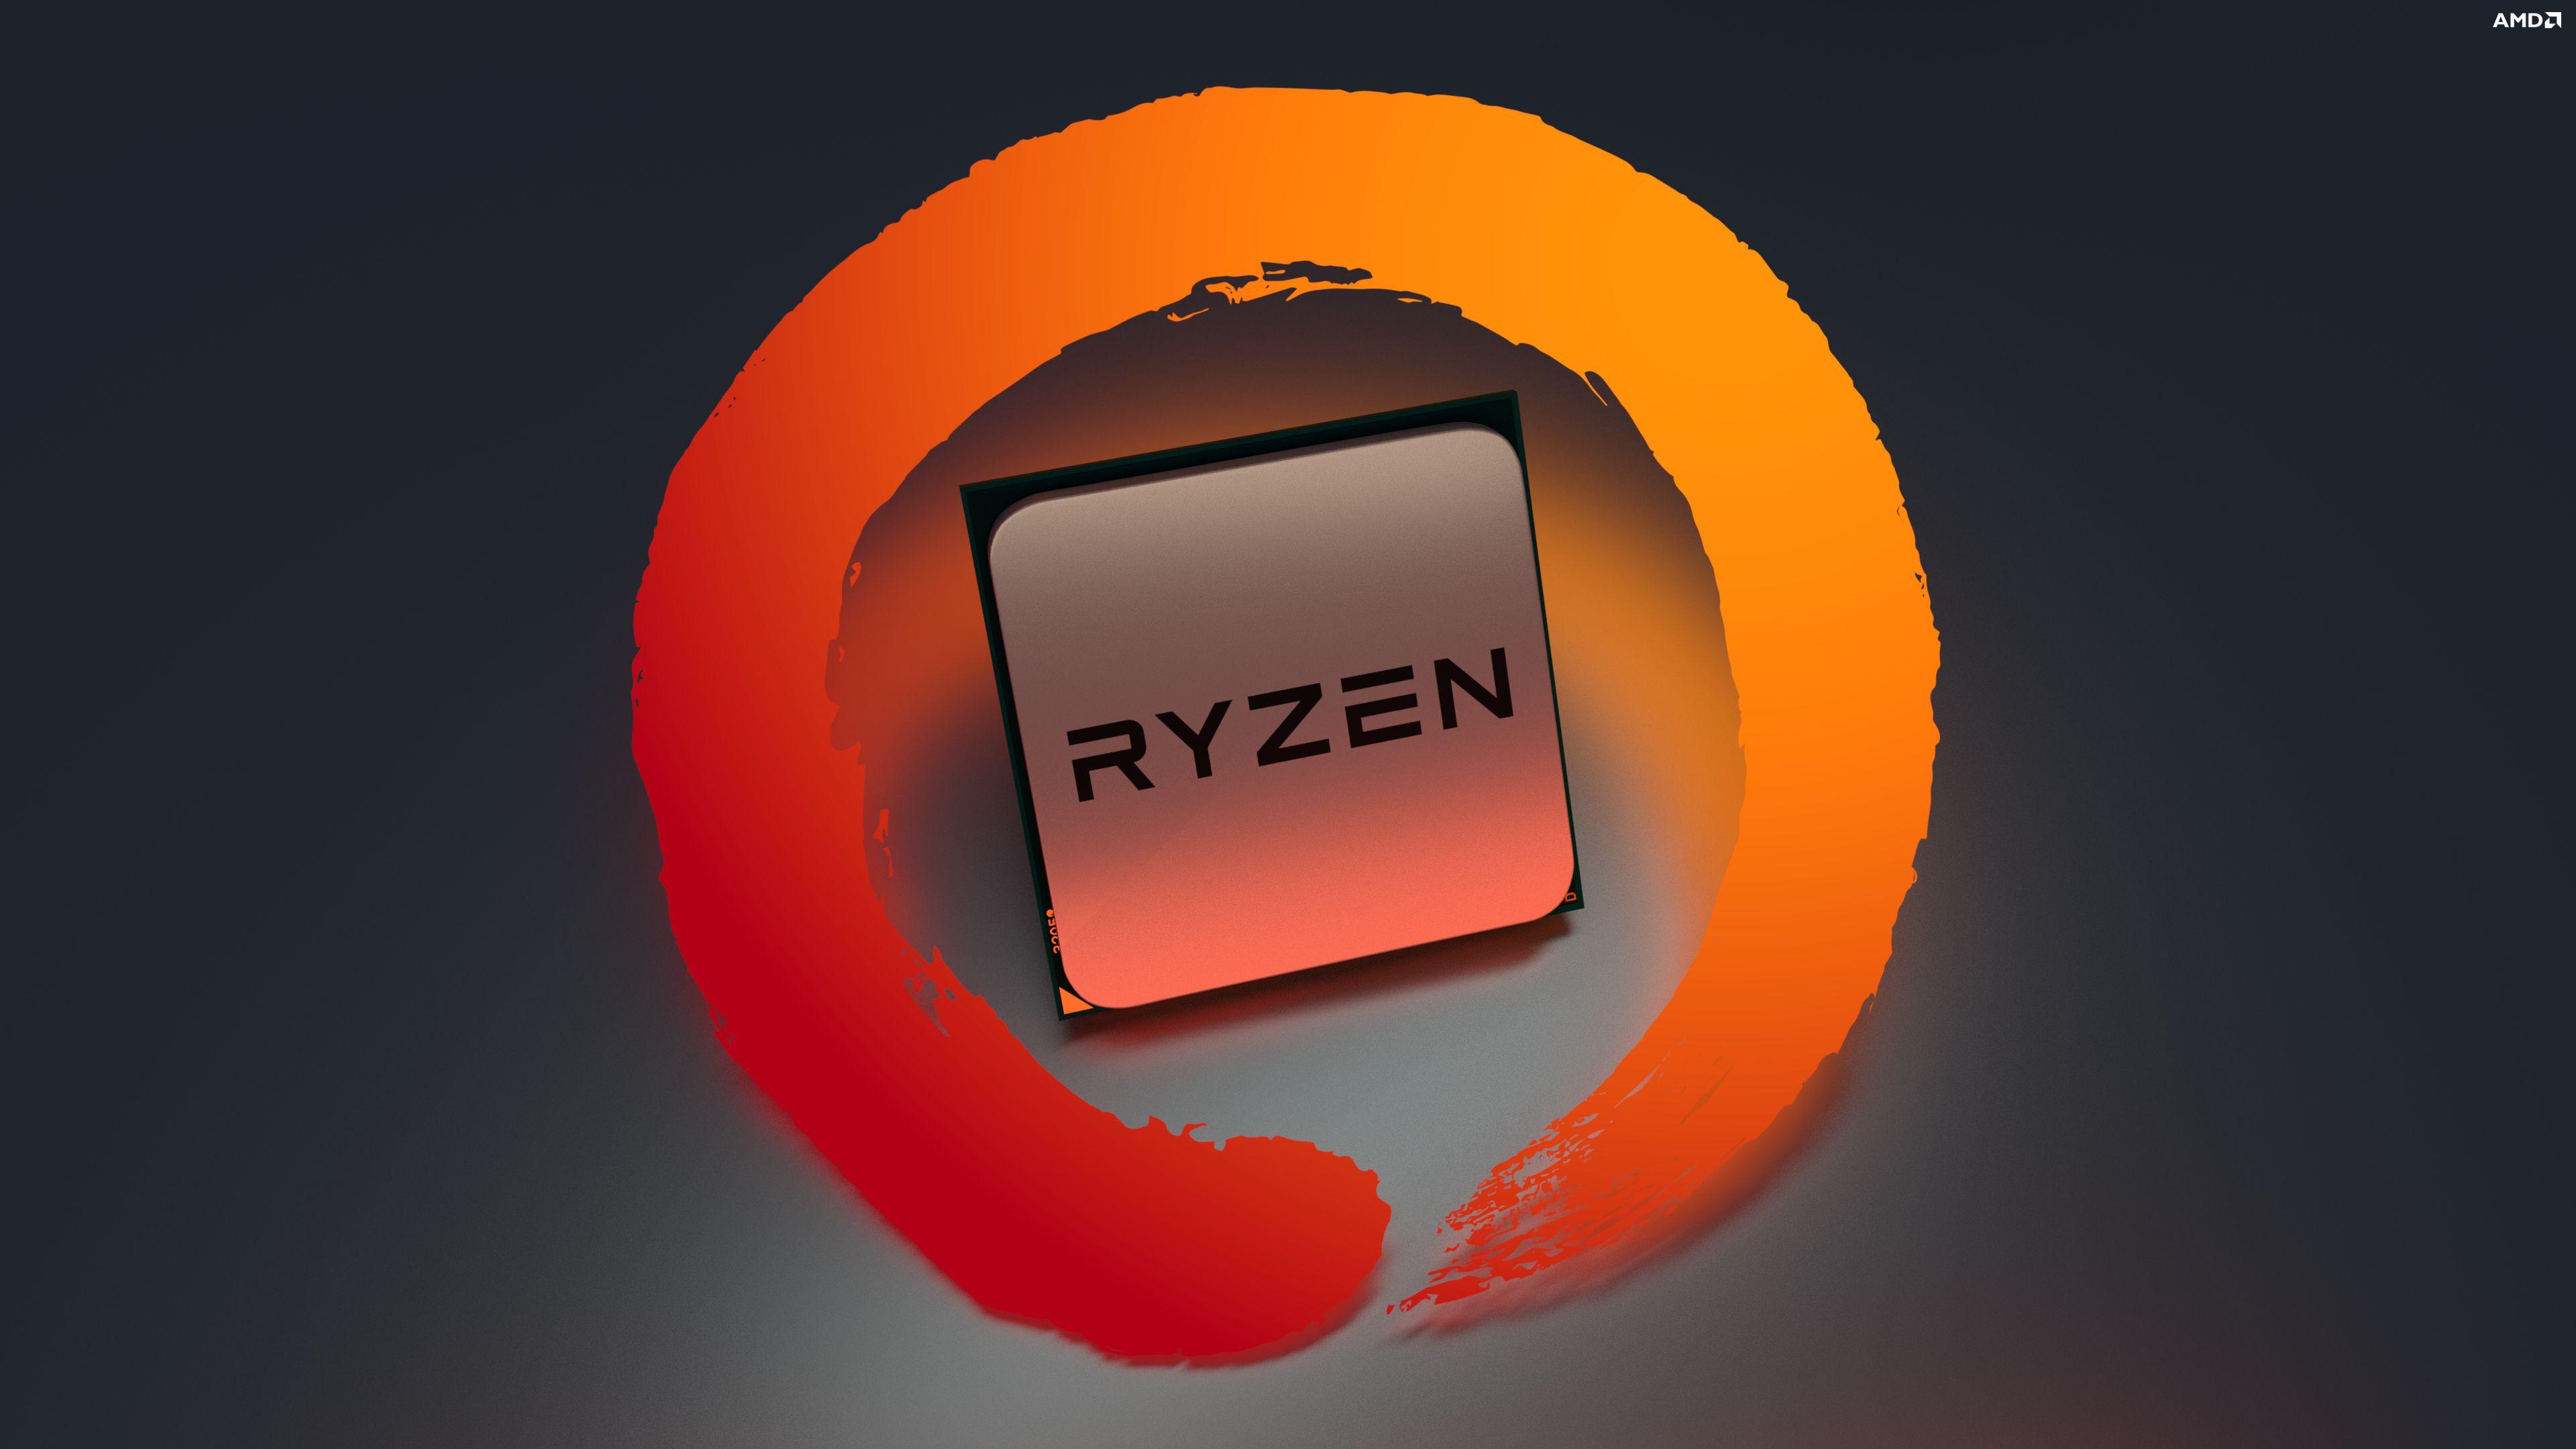 AMD Ryzen Wallpapers - Wallpaper Cave